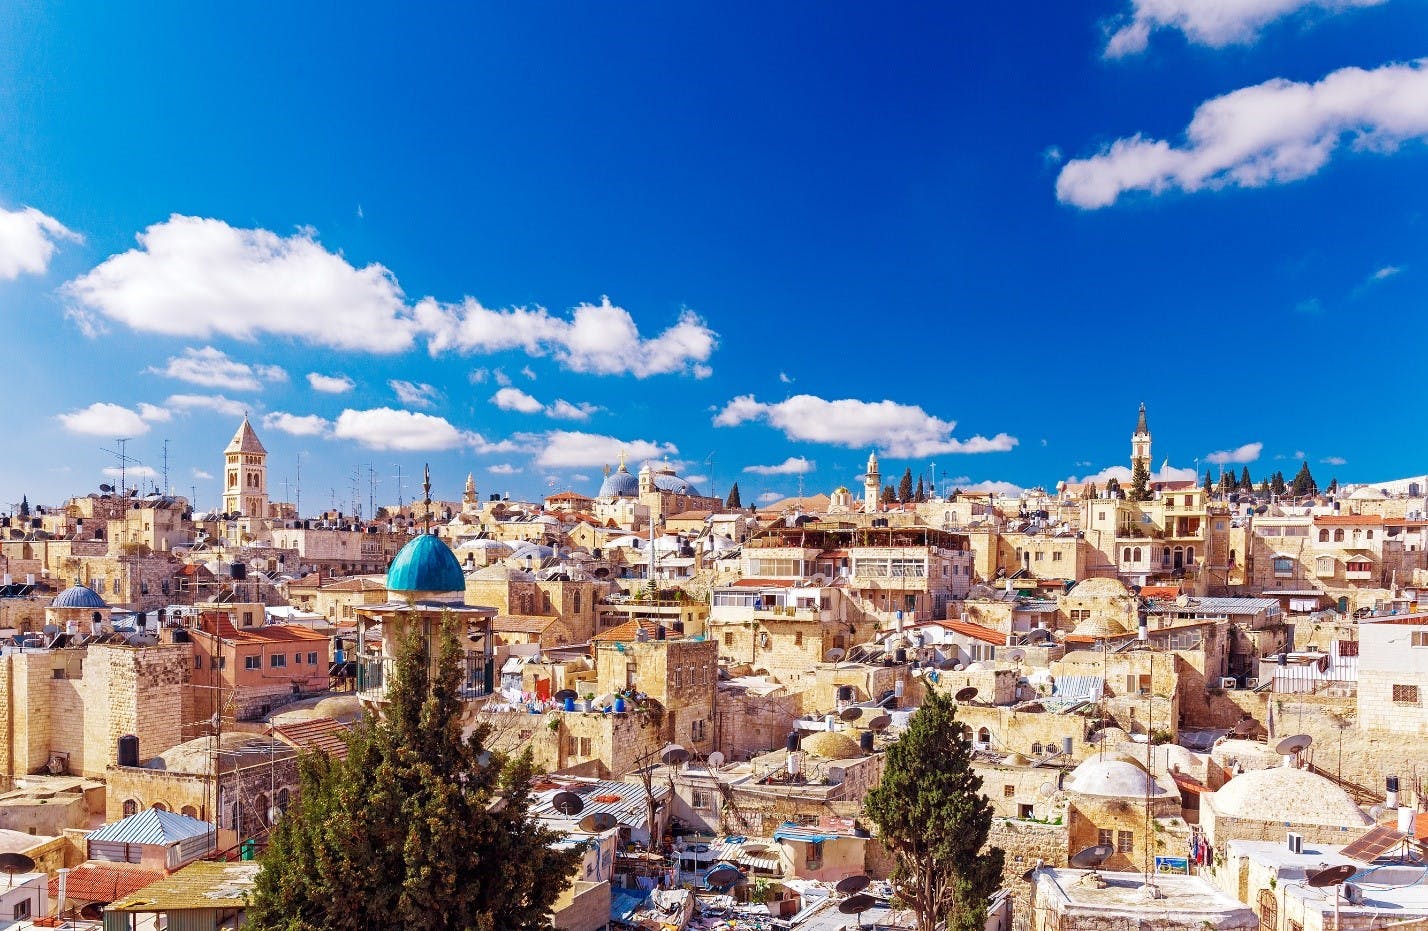 Old City of Jerusalem with blue sky above 